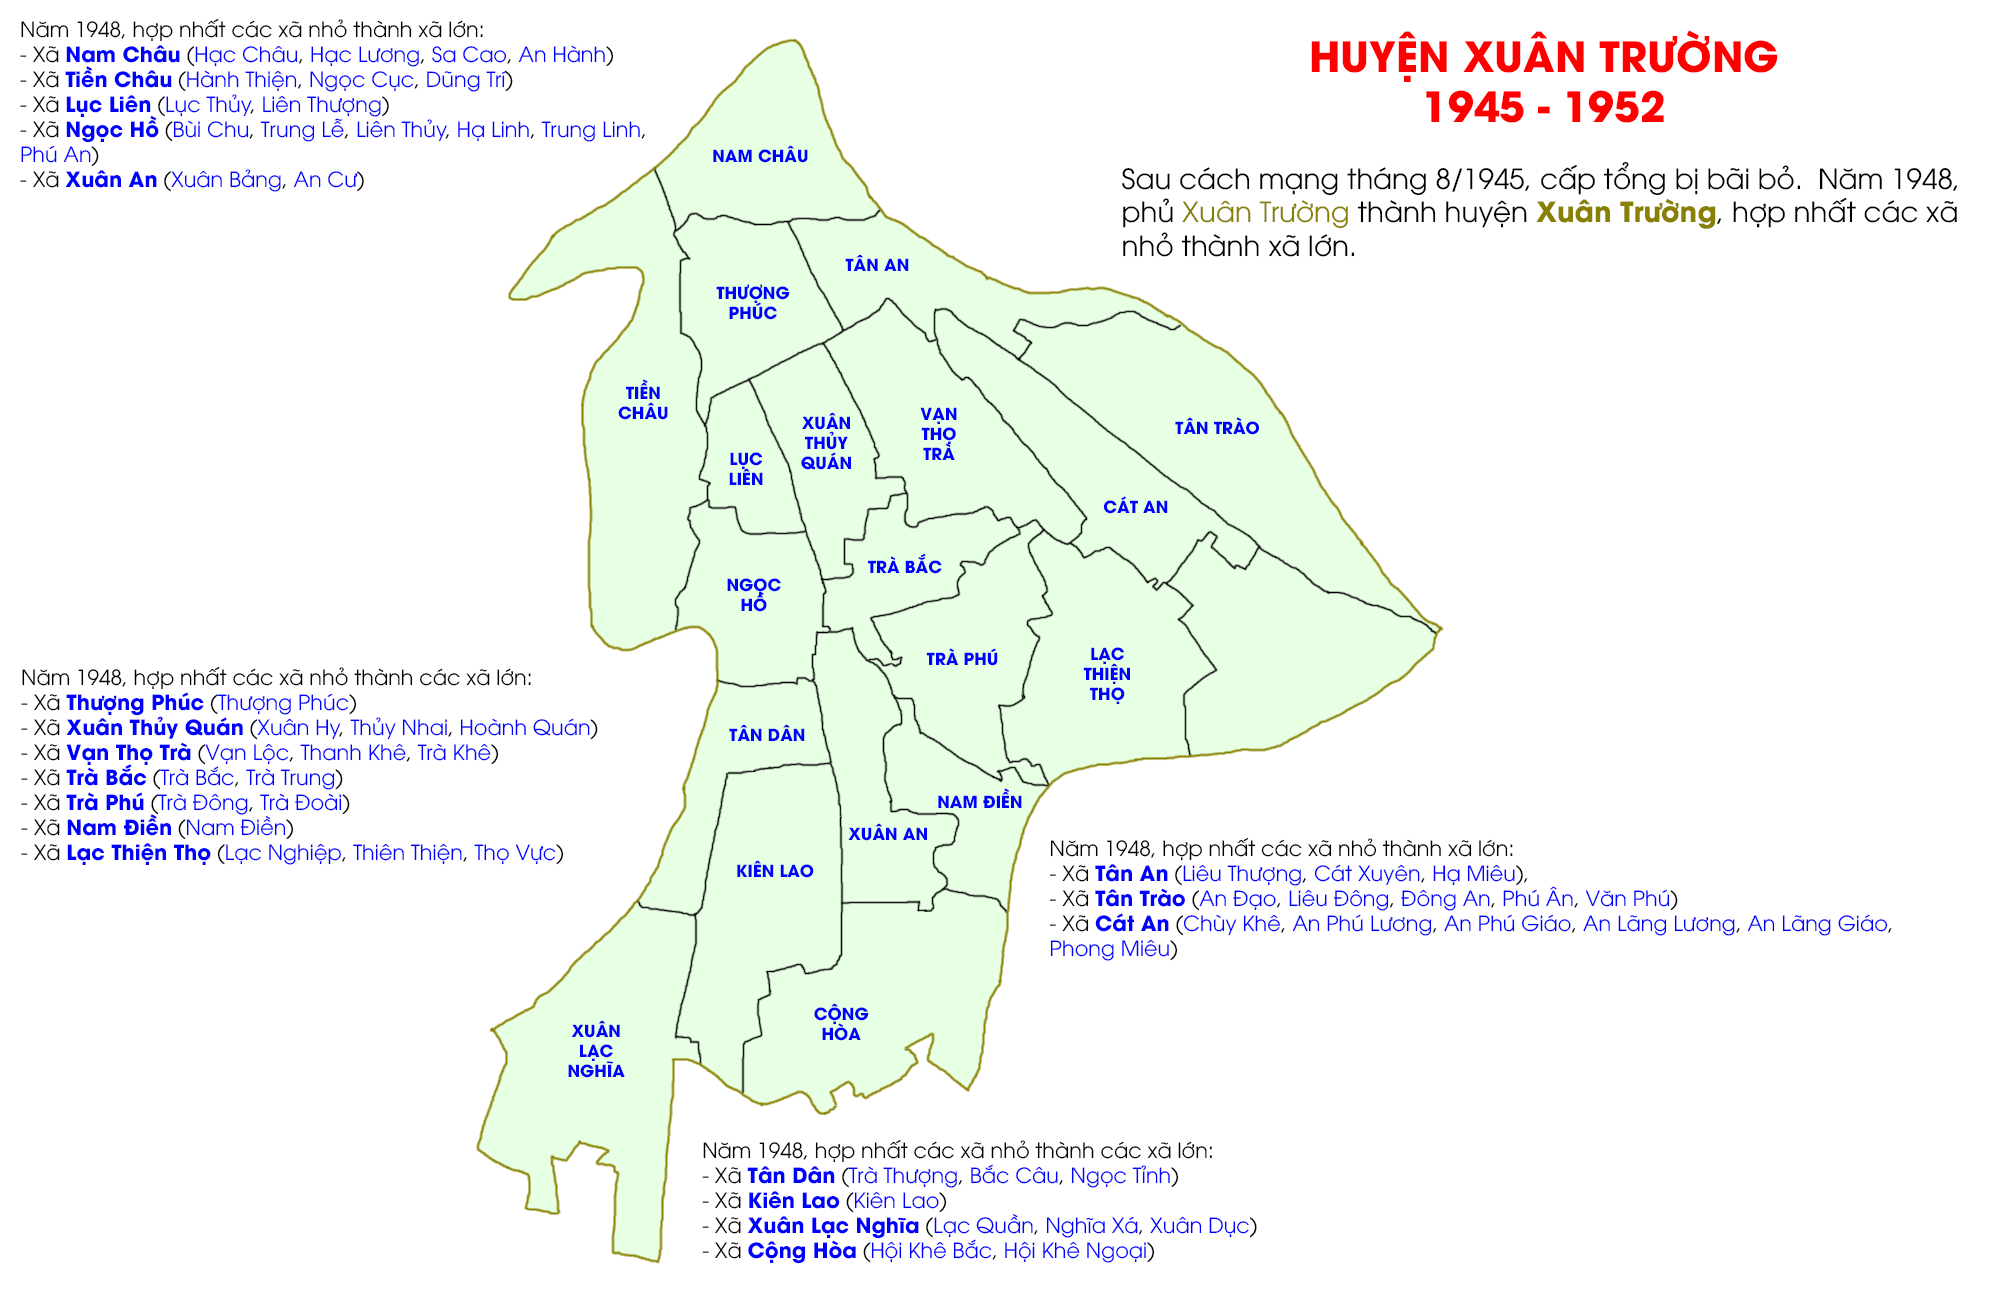 Địa danh huyện Xuân Trường từ năm 1948 đến năm 1952